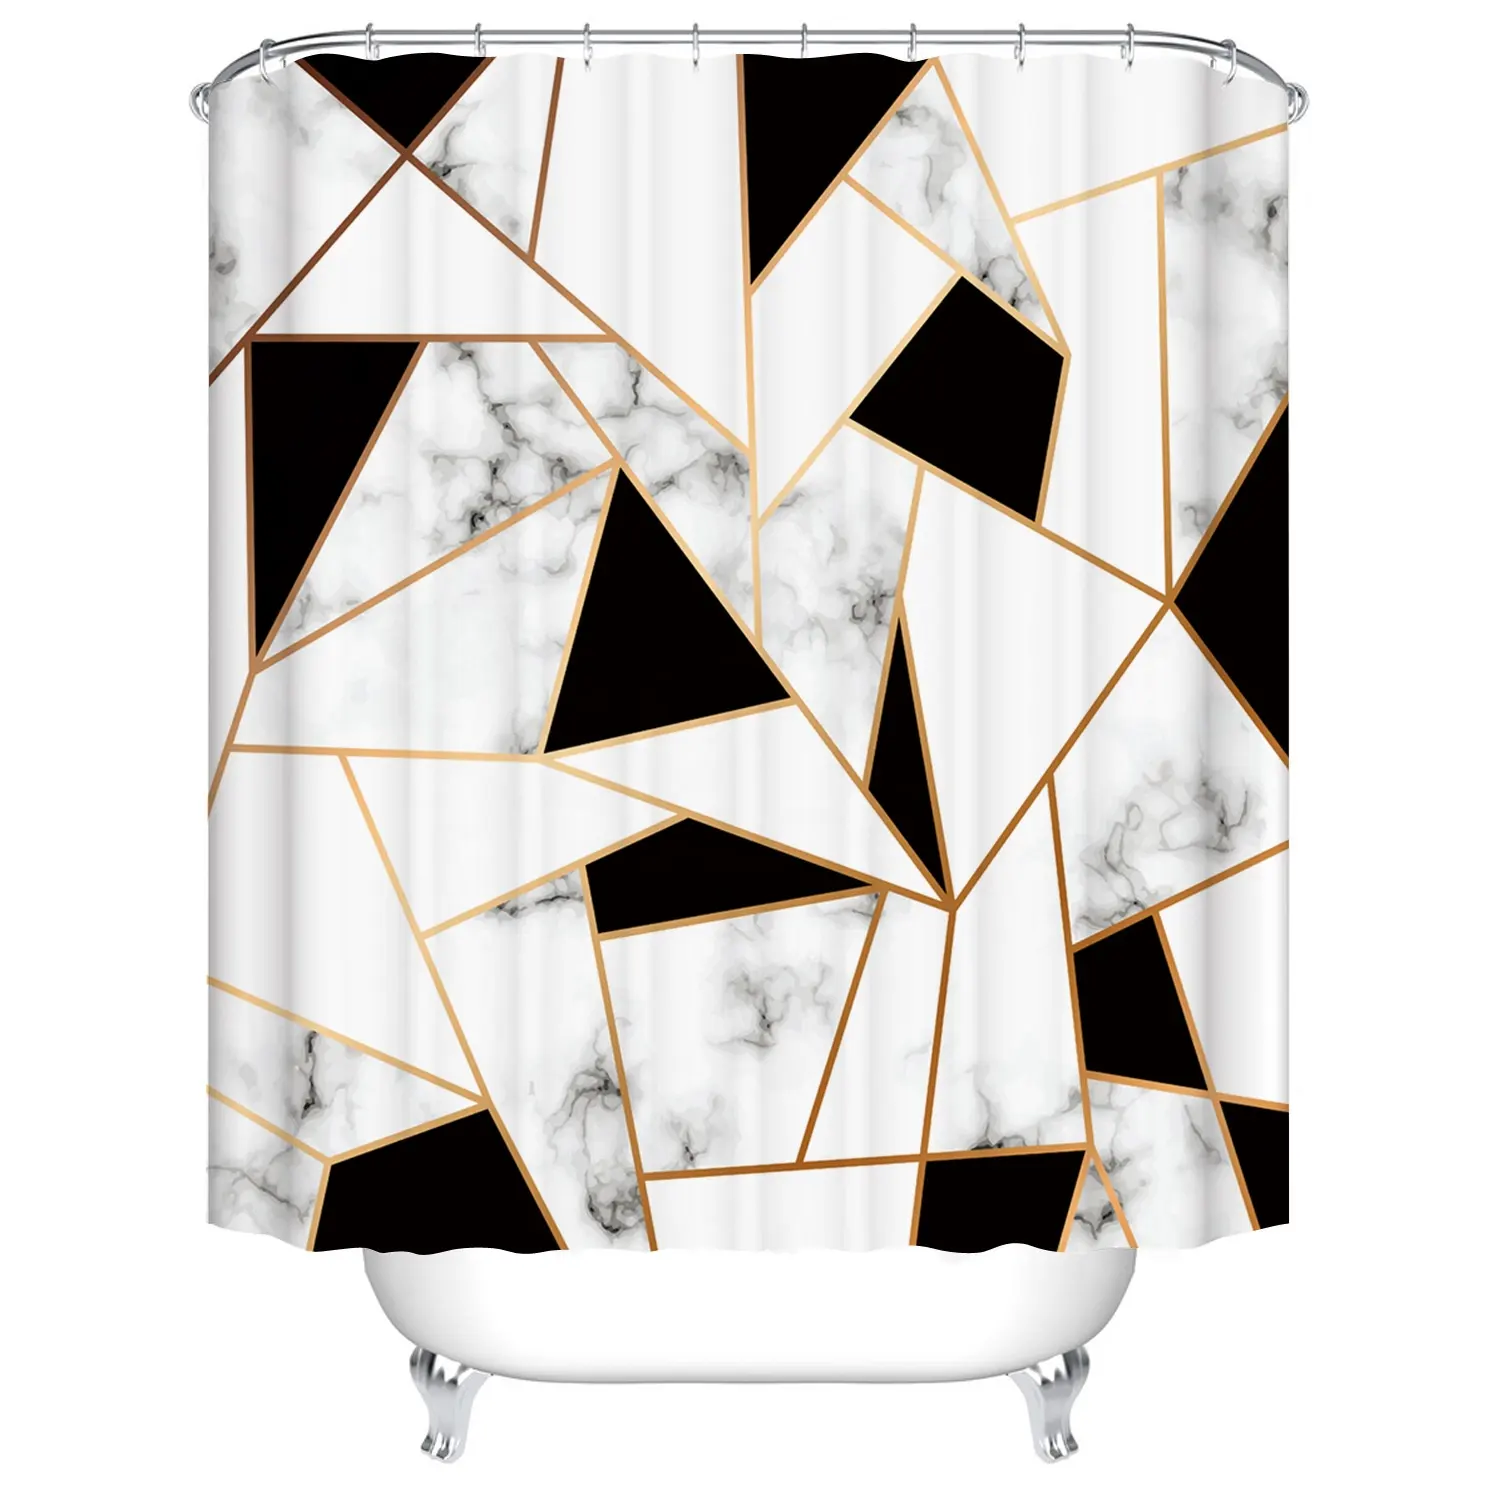 Design personalizzato moderno stampa digitale colorato in poliestere tende da doccia durevole tenda da bagno impermeabile accessorio da bagno